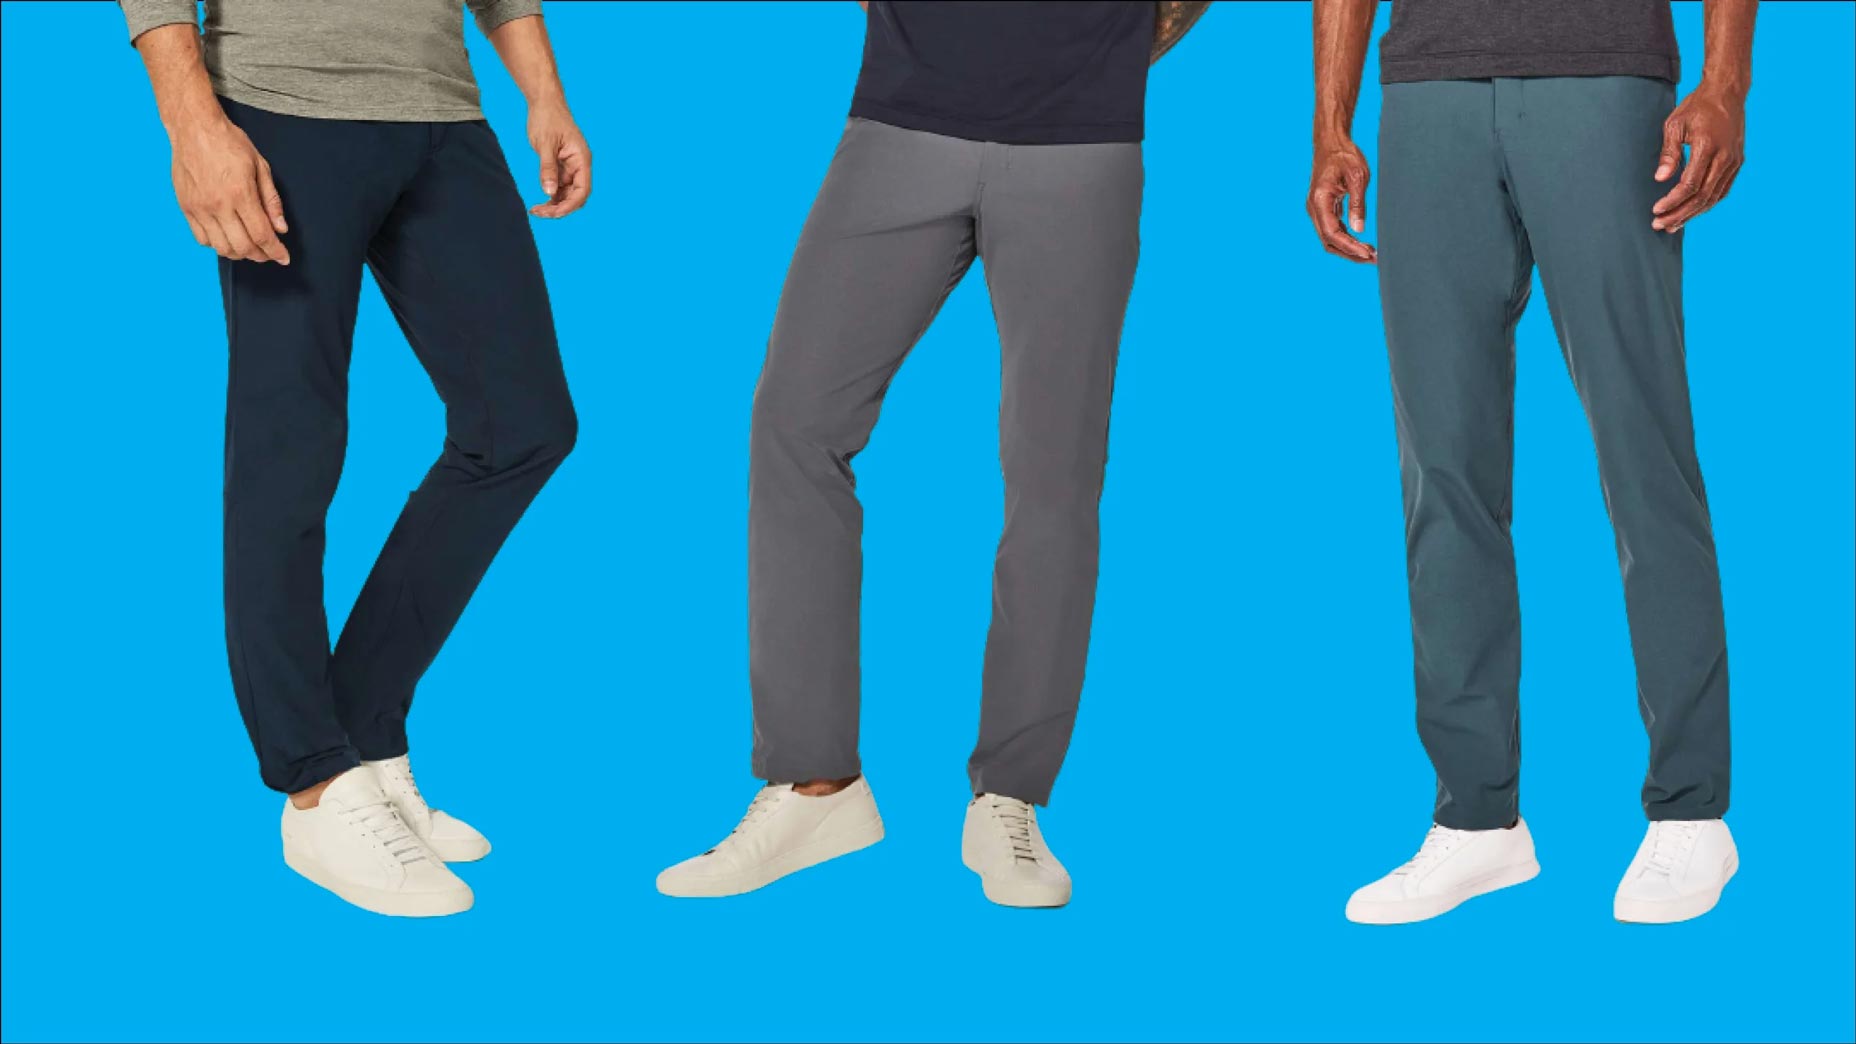 Pants Similar To Lululemon For Men